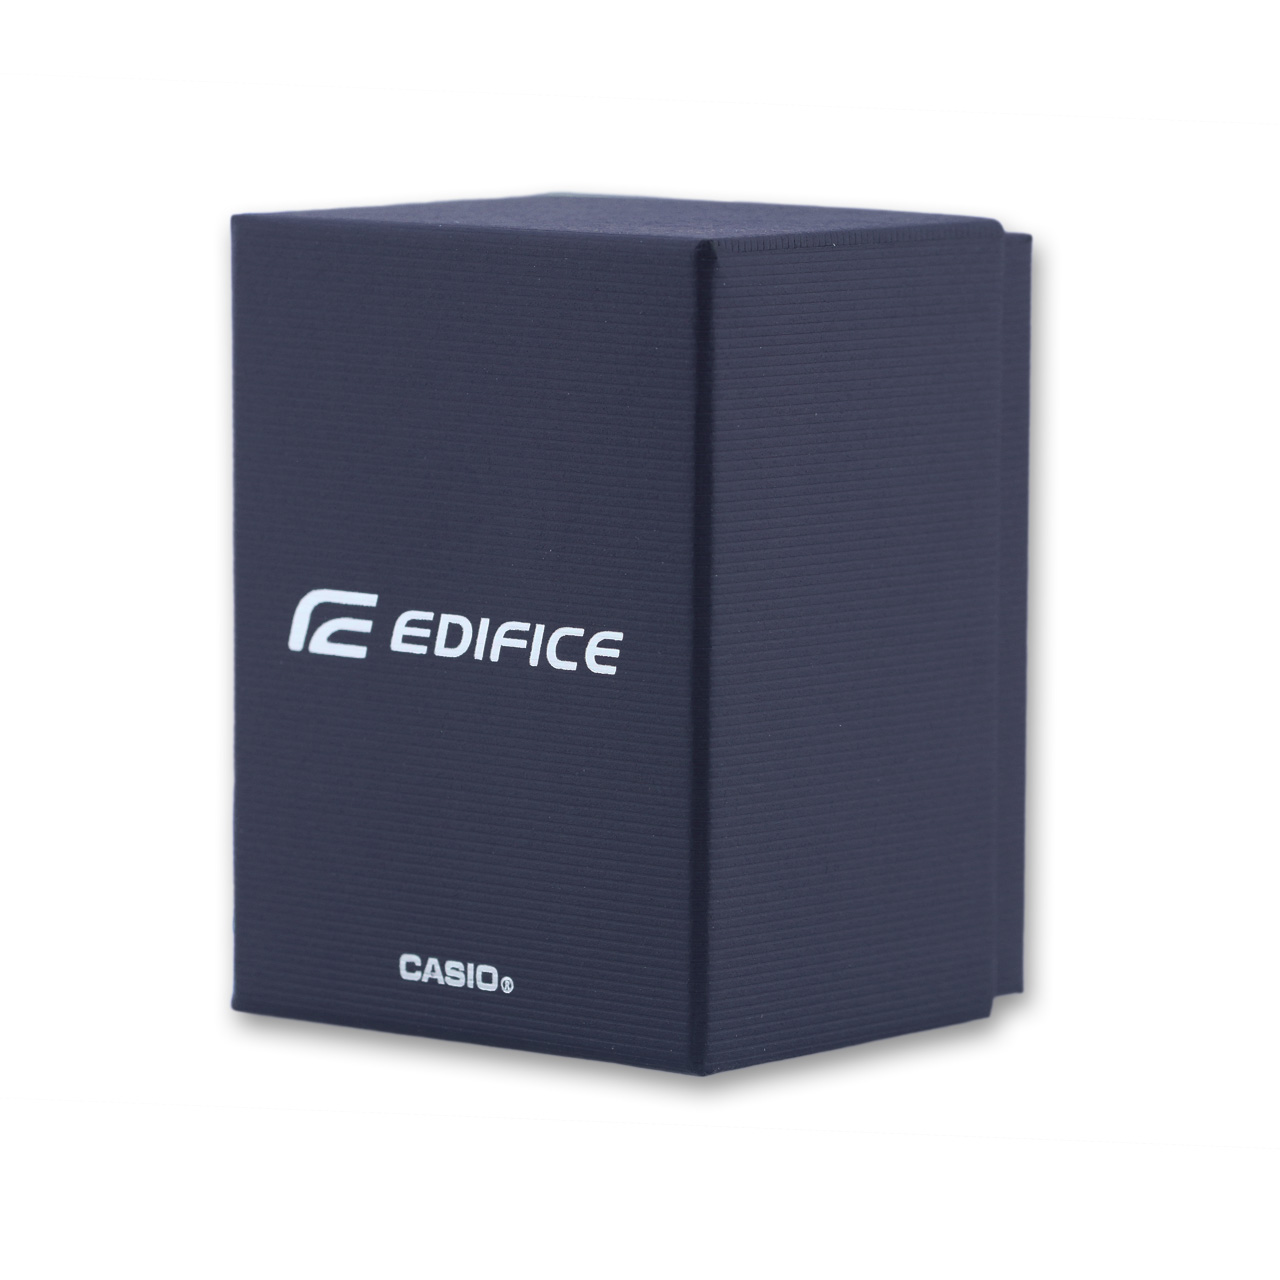 Casio Edifice Herrenuhr EFV-540DC-1AVUEF